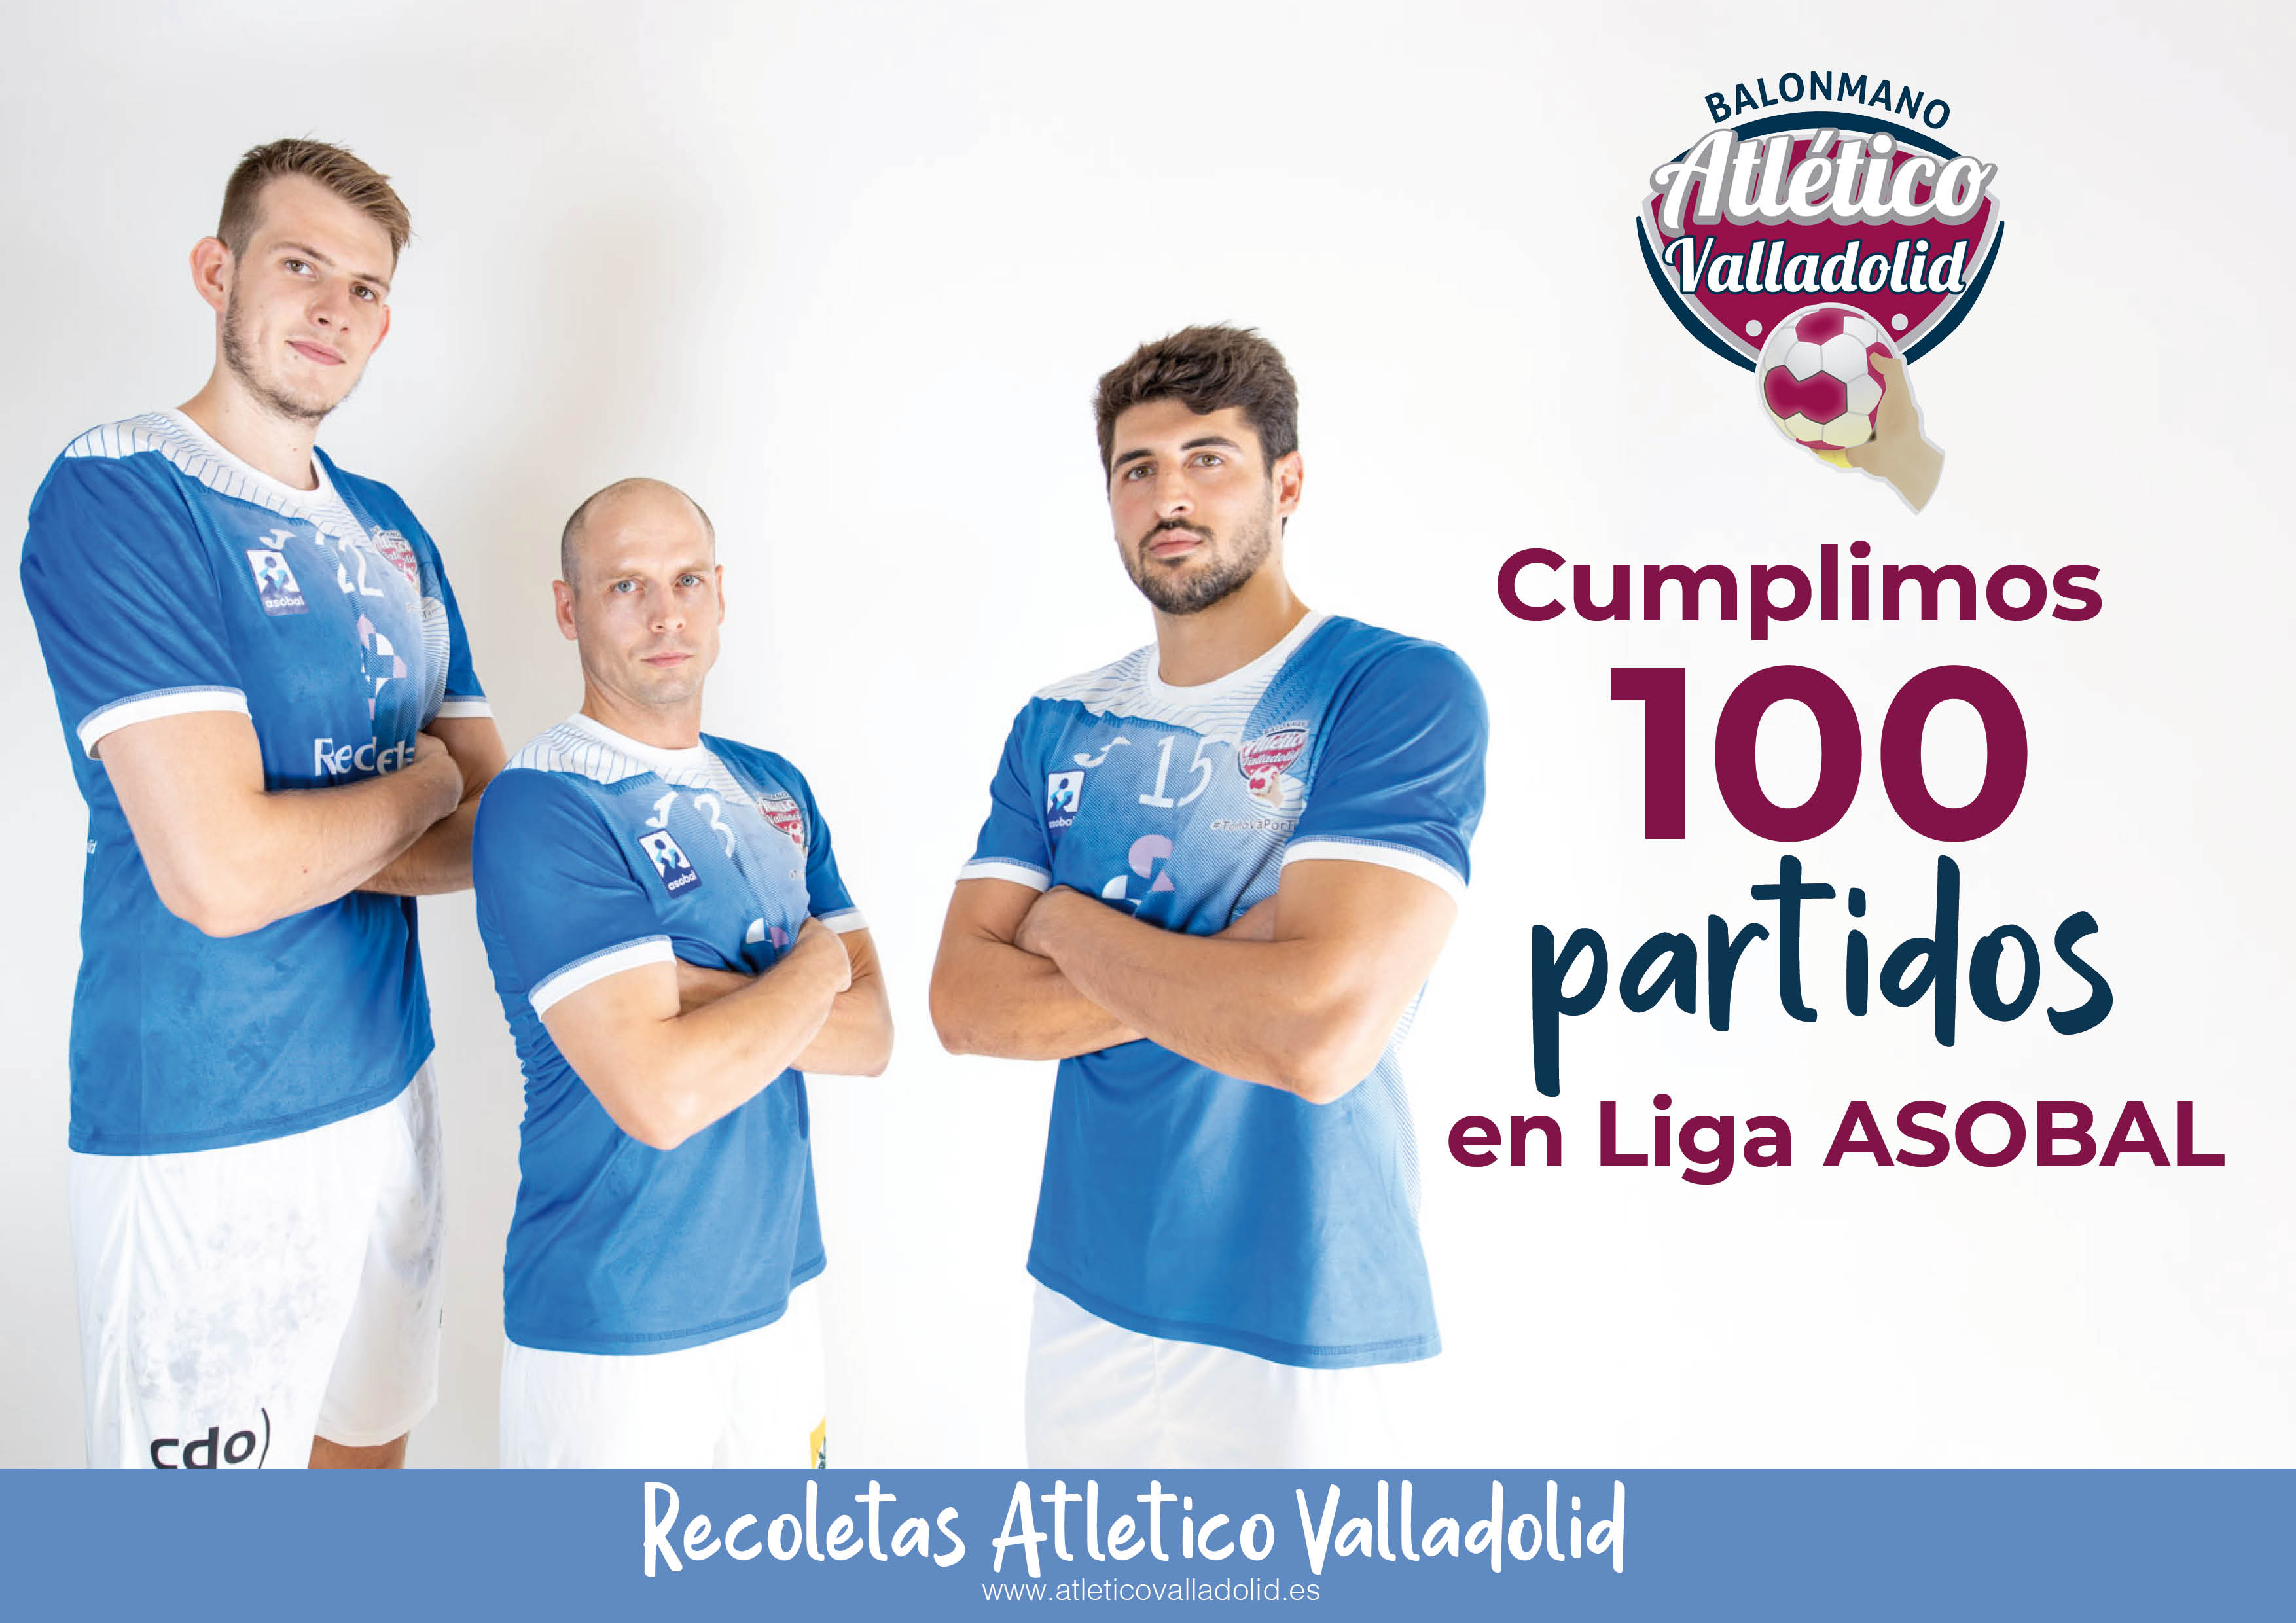 Cien partidos del Recoletas Atlético Valladolid en la Liga ASOBAL